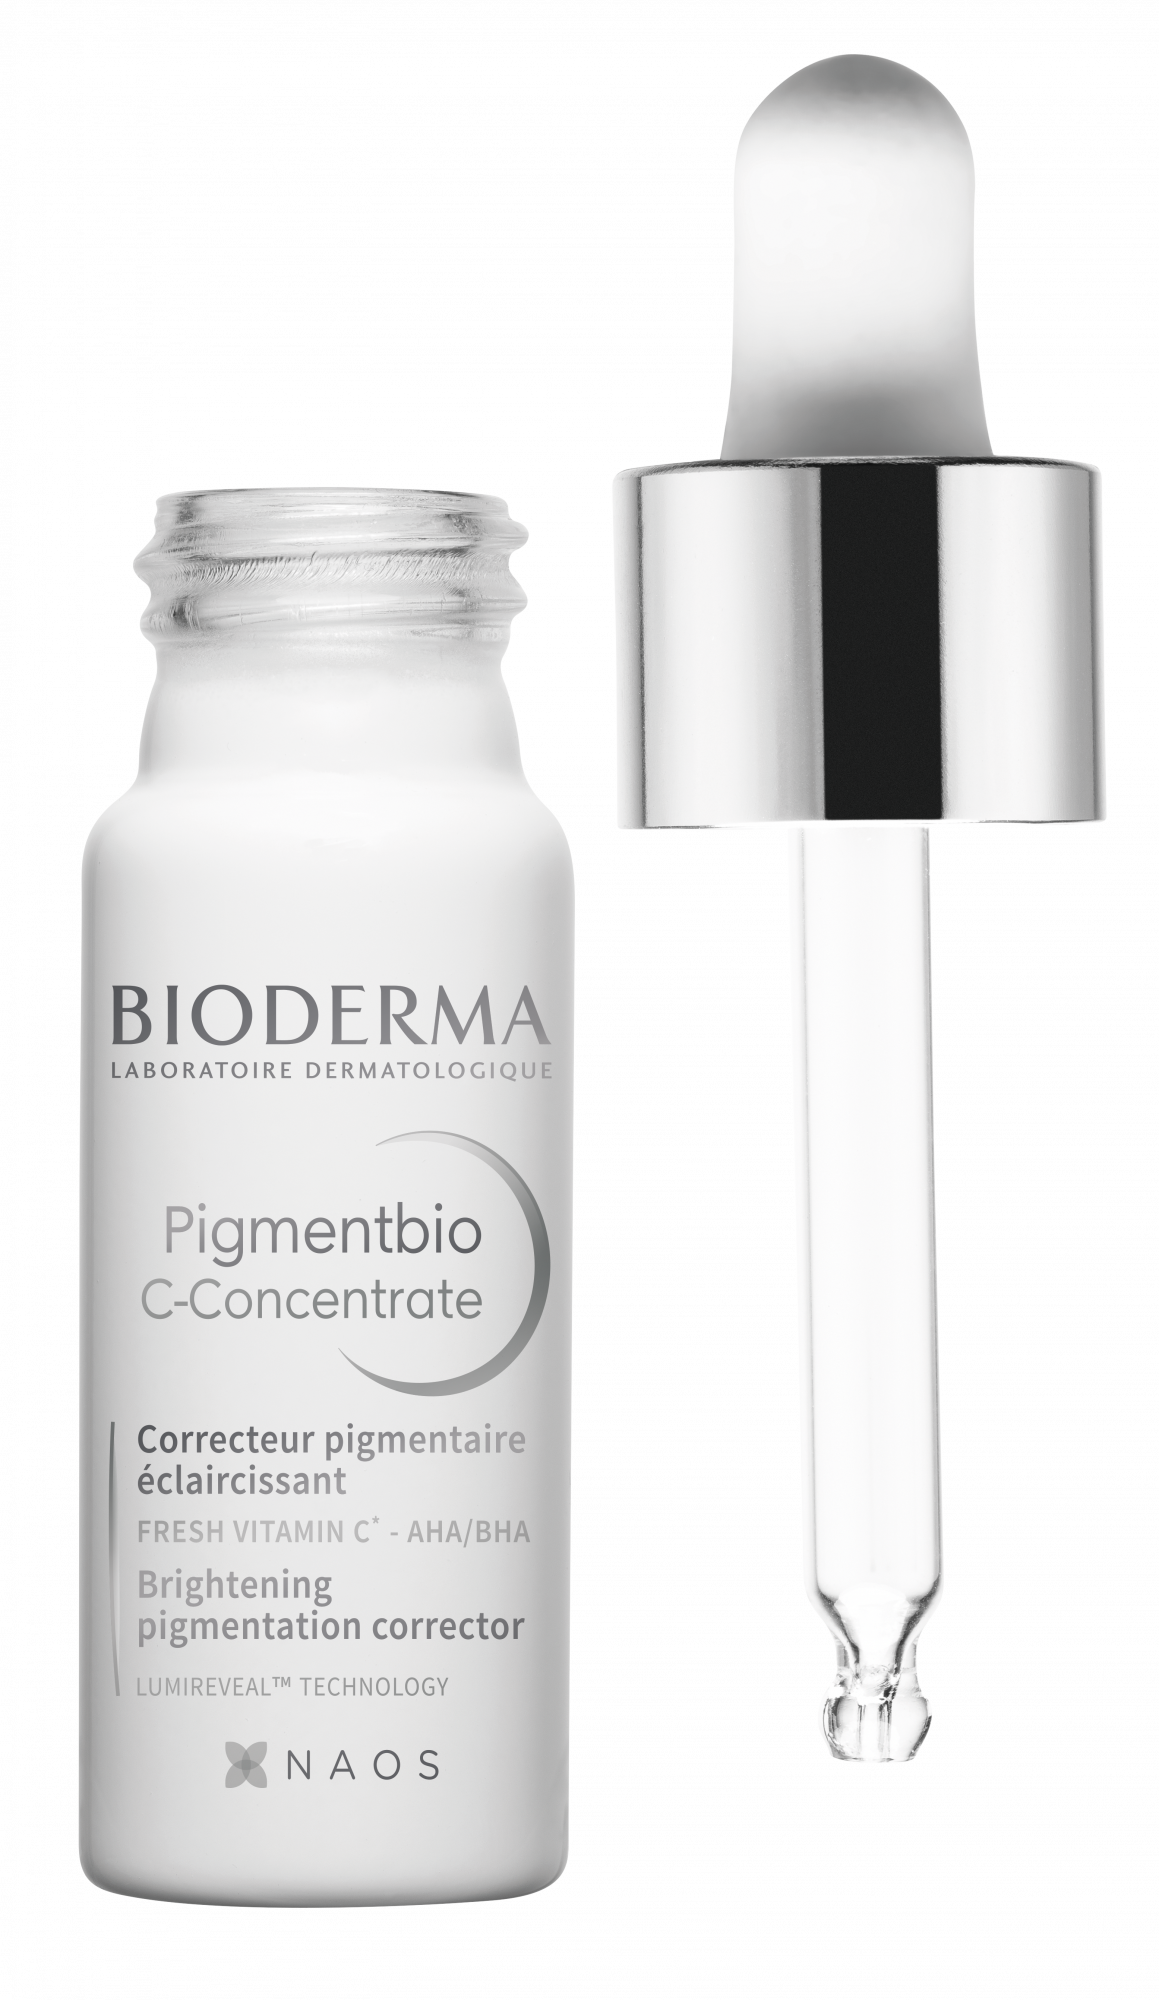 BIODERMA Pigmentbio C-Concentrate Vitamin C face serum